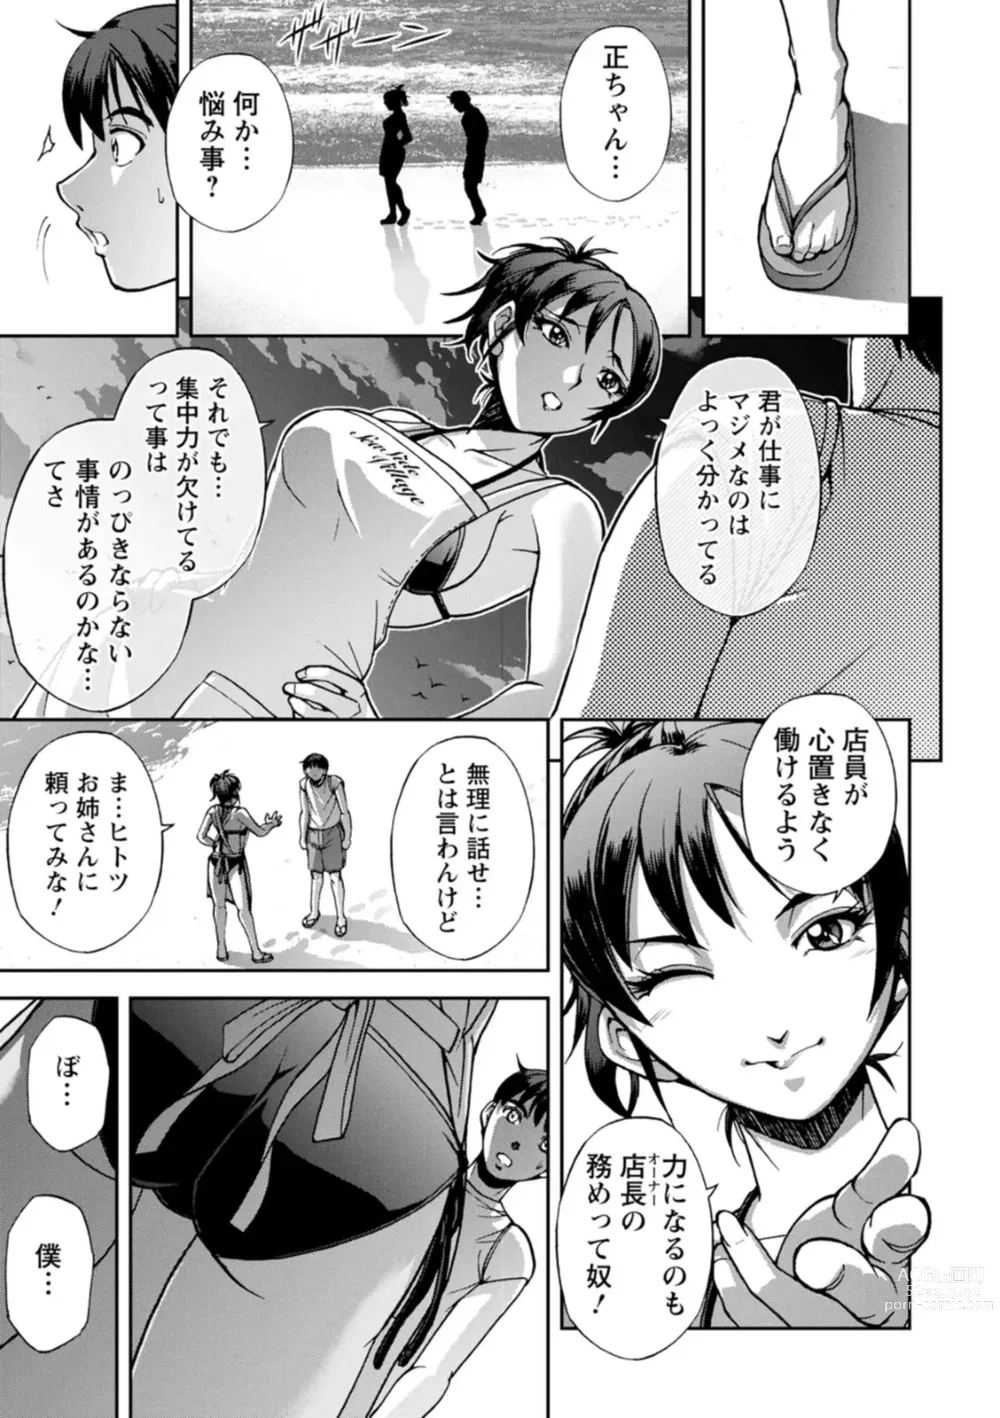 Page 7 of doujinshi Nishigaki-san is stylish and inane